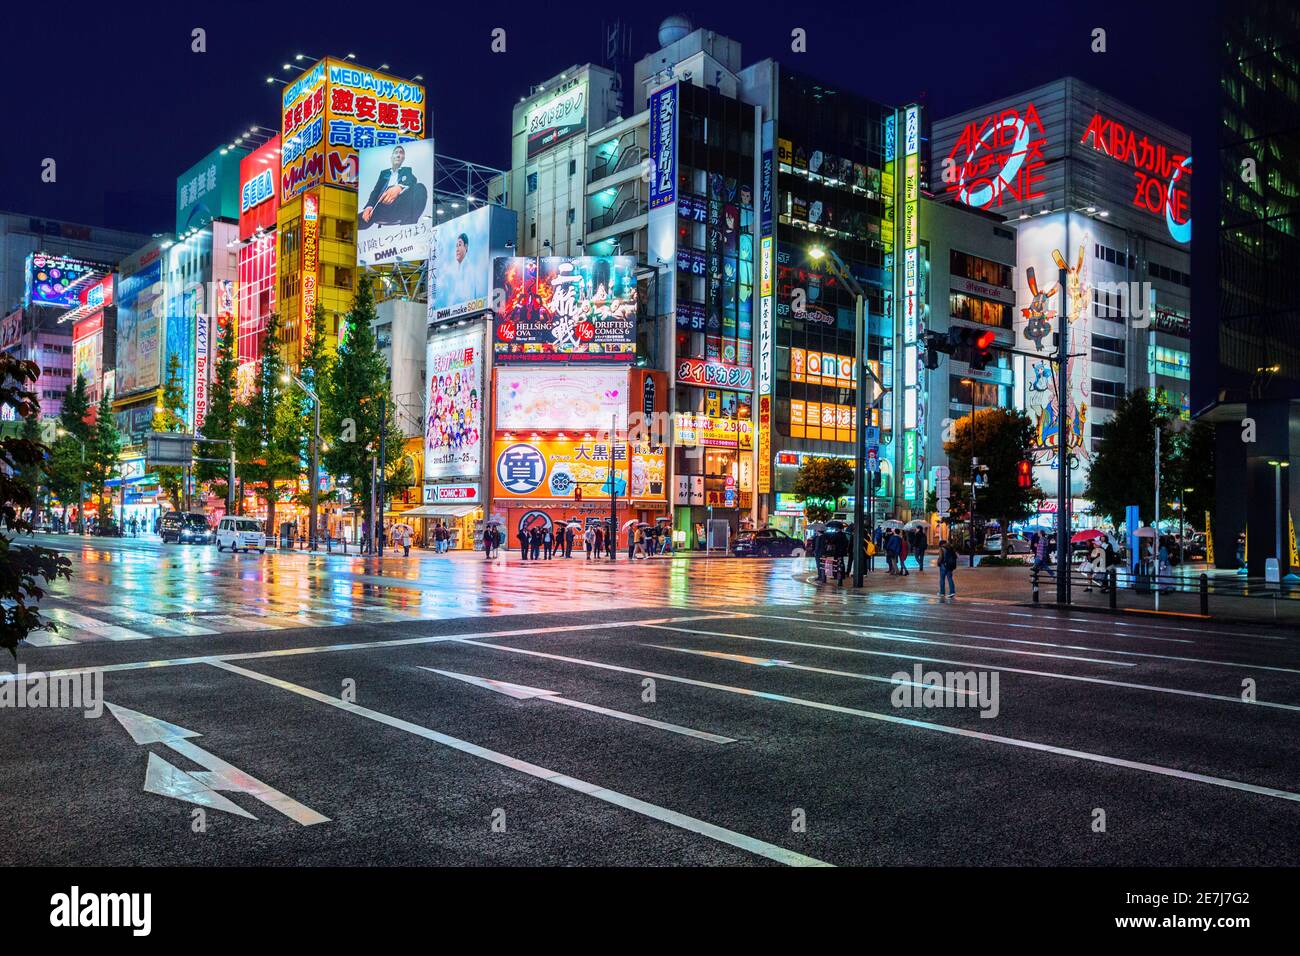 Neonröhren und Reklametafeln Werbung auf Gebäuden in Akihabara bei regnerischen Nacht, Tokio, Japan Stockfoto